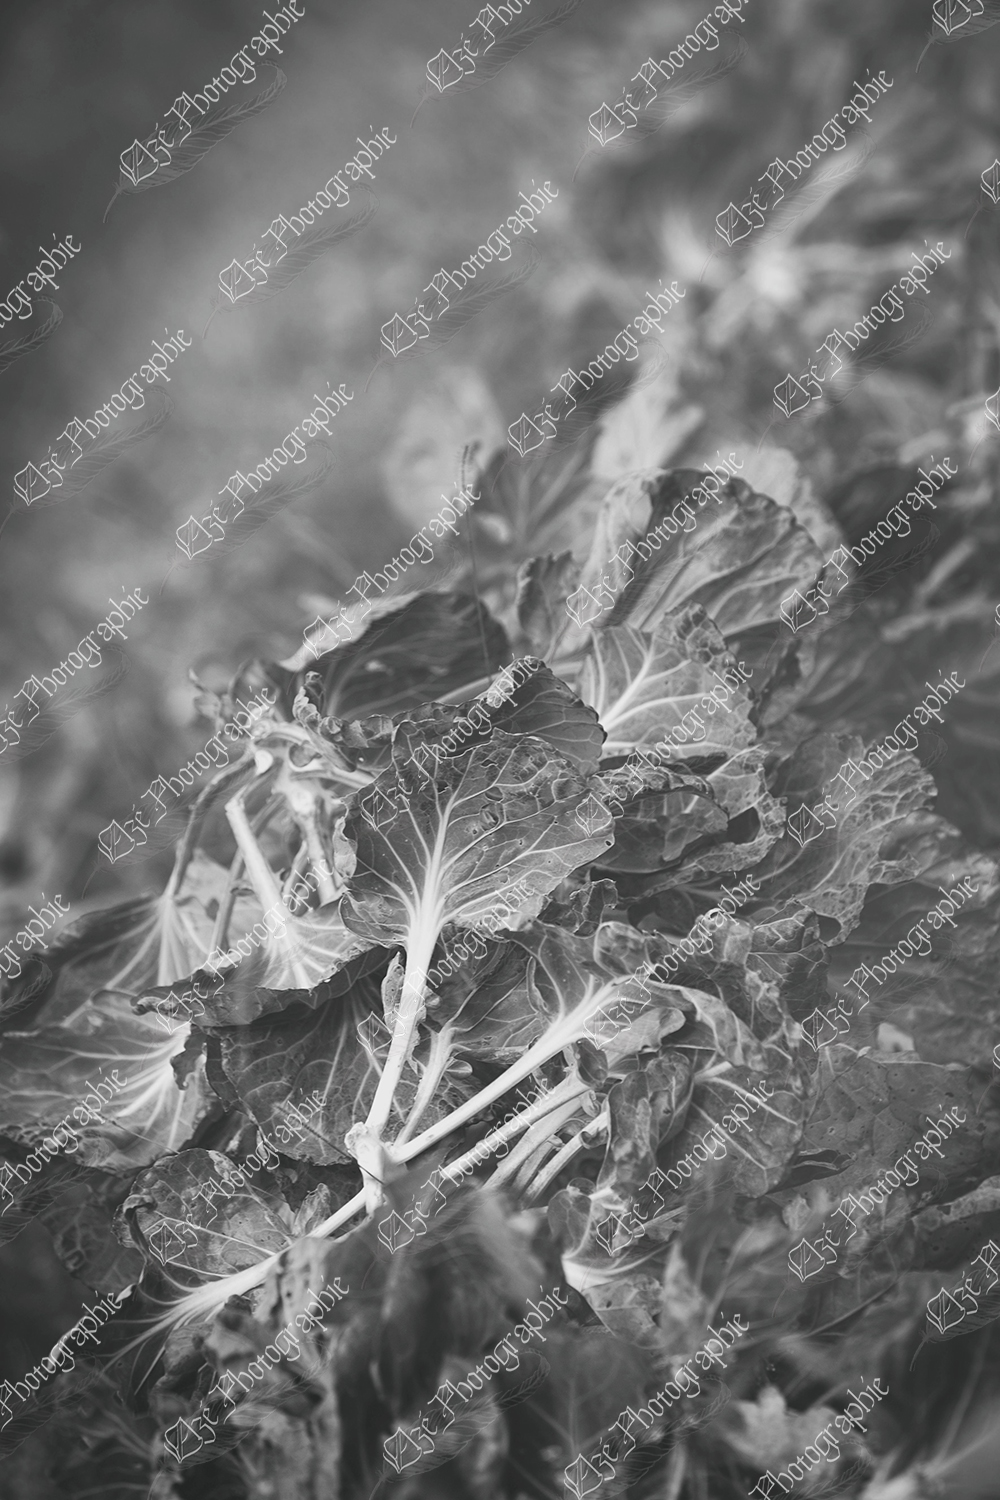 elze_photo_4661_automne_laitue_feuilles_picked_lettuce_leaves